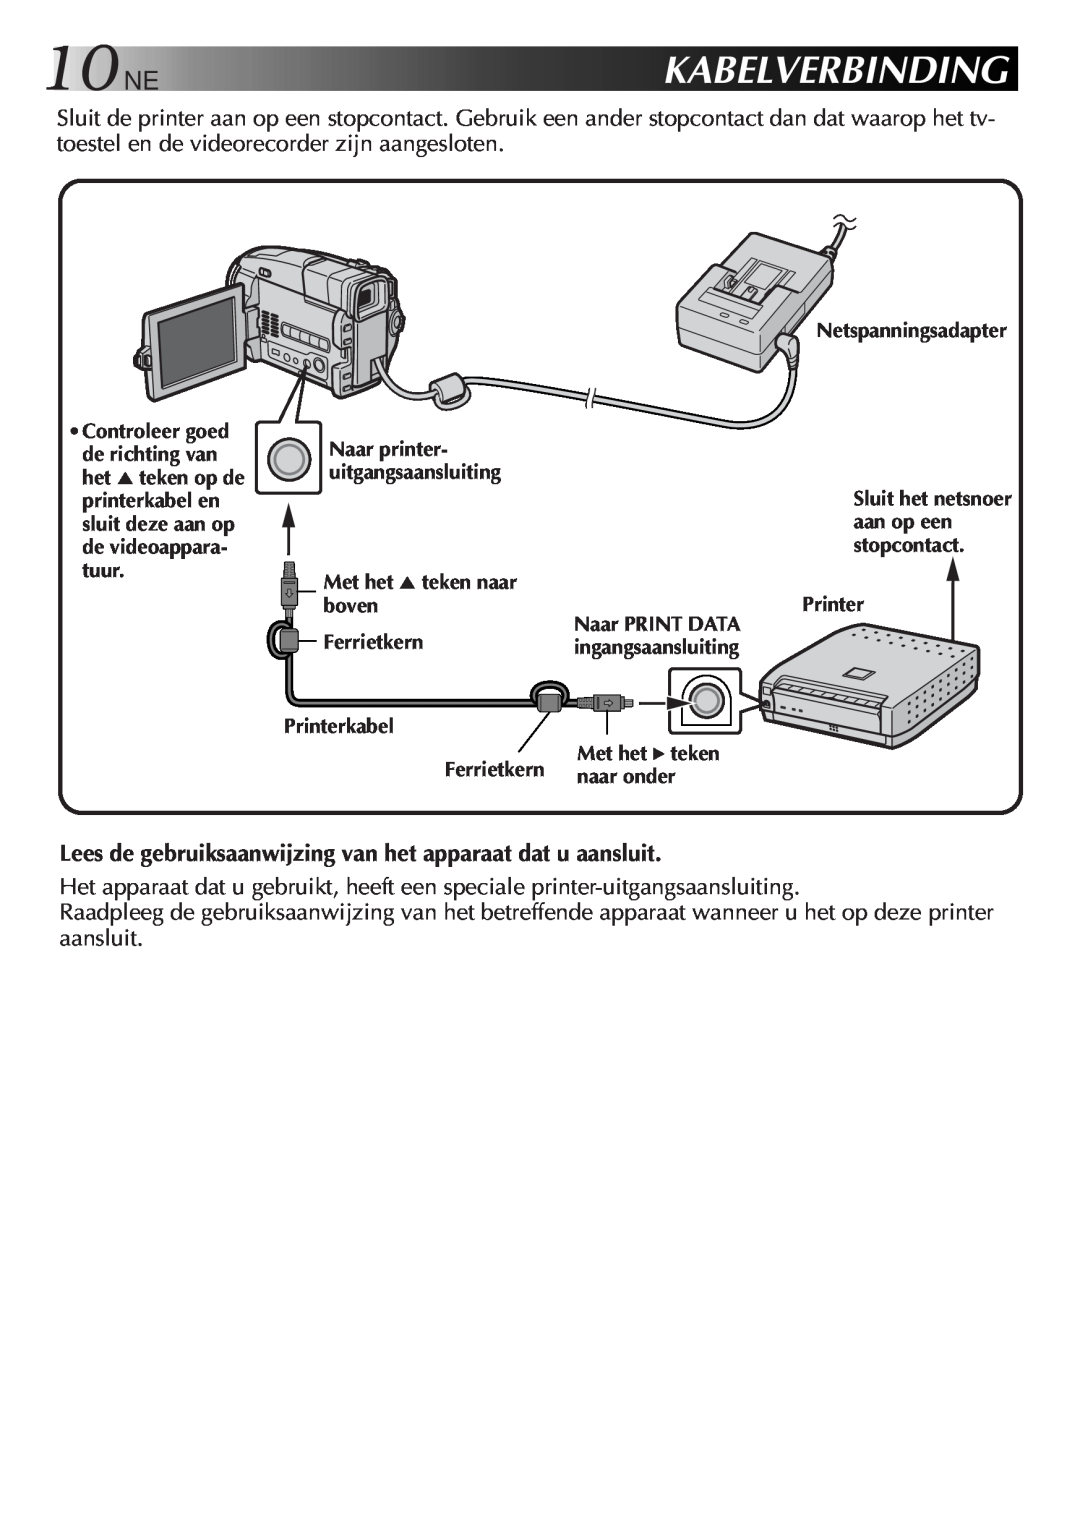 JVC GV-SP2 manual 10NE, Kabelverbinding 